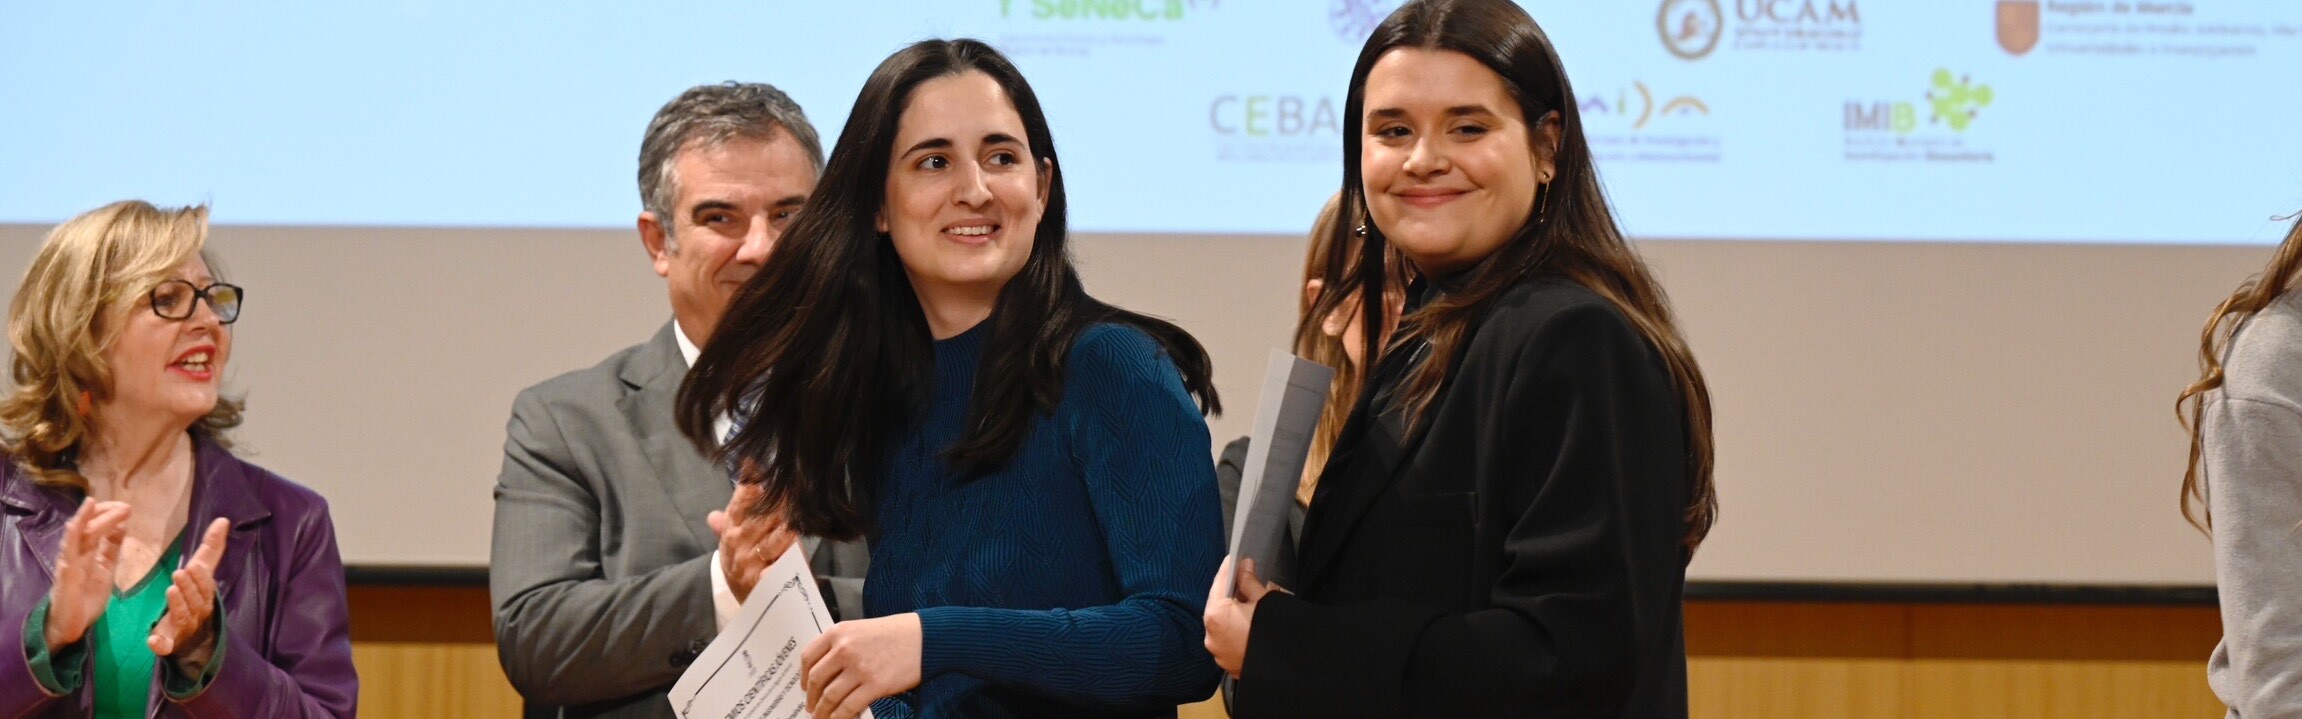 El Lycée des Sciences premia a las jóvenes investigadoras de la UMU Julia Alarcón, Raquel Espinosa y Elena Martínez